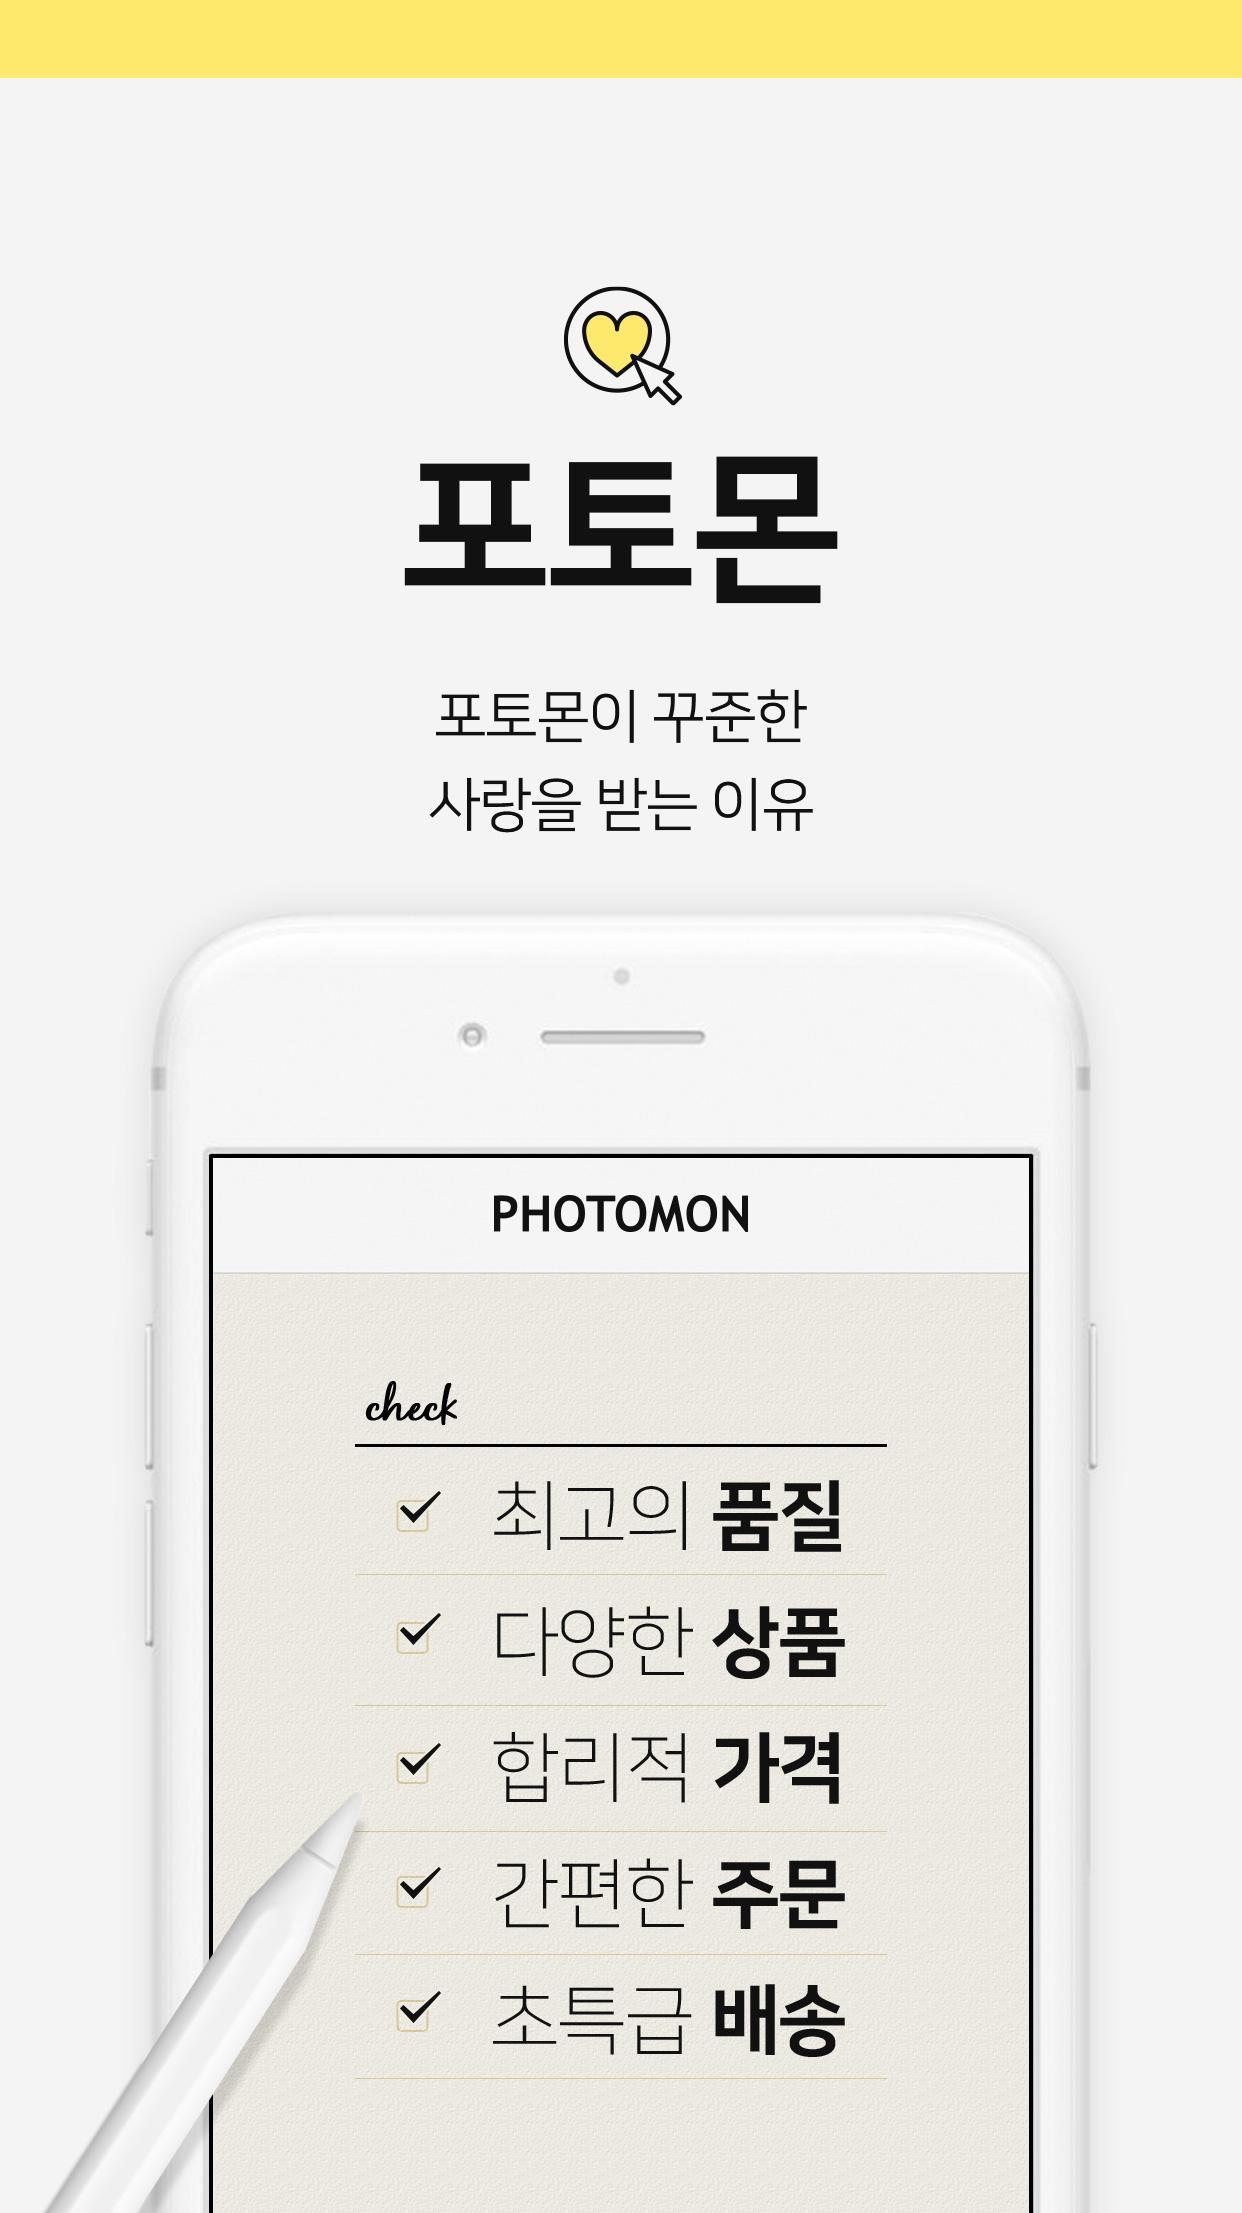 PHOTOMON - 사진인화, 포토북, 달력, 액자... 사진 전문 브랜드, 포토몬!